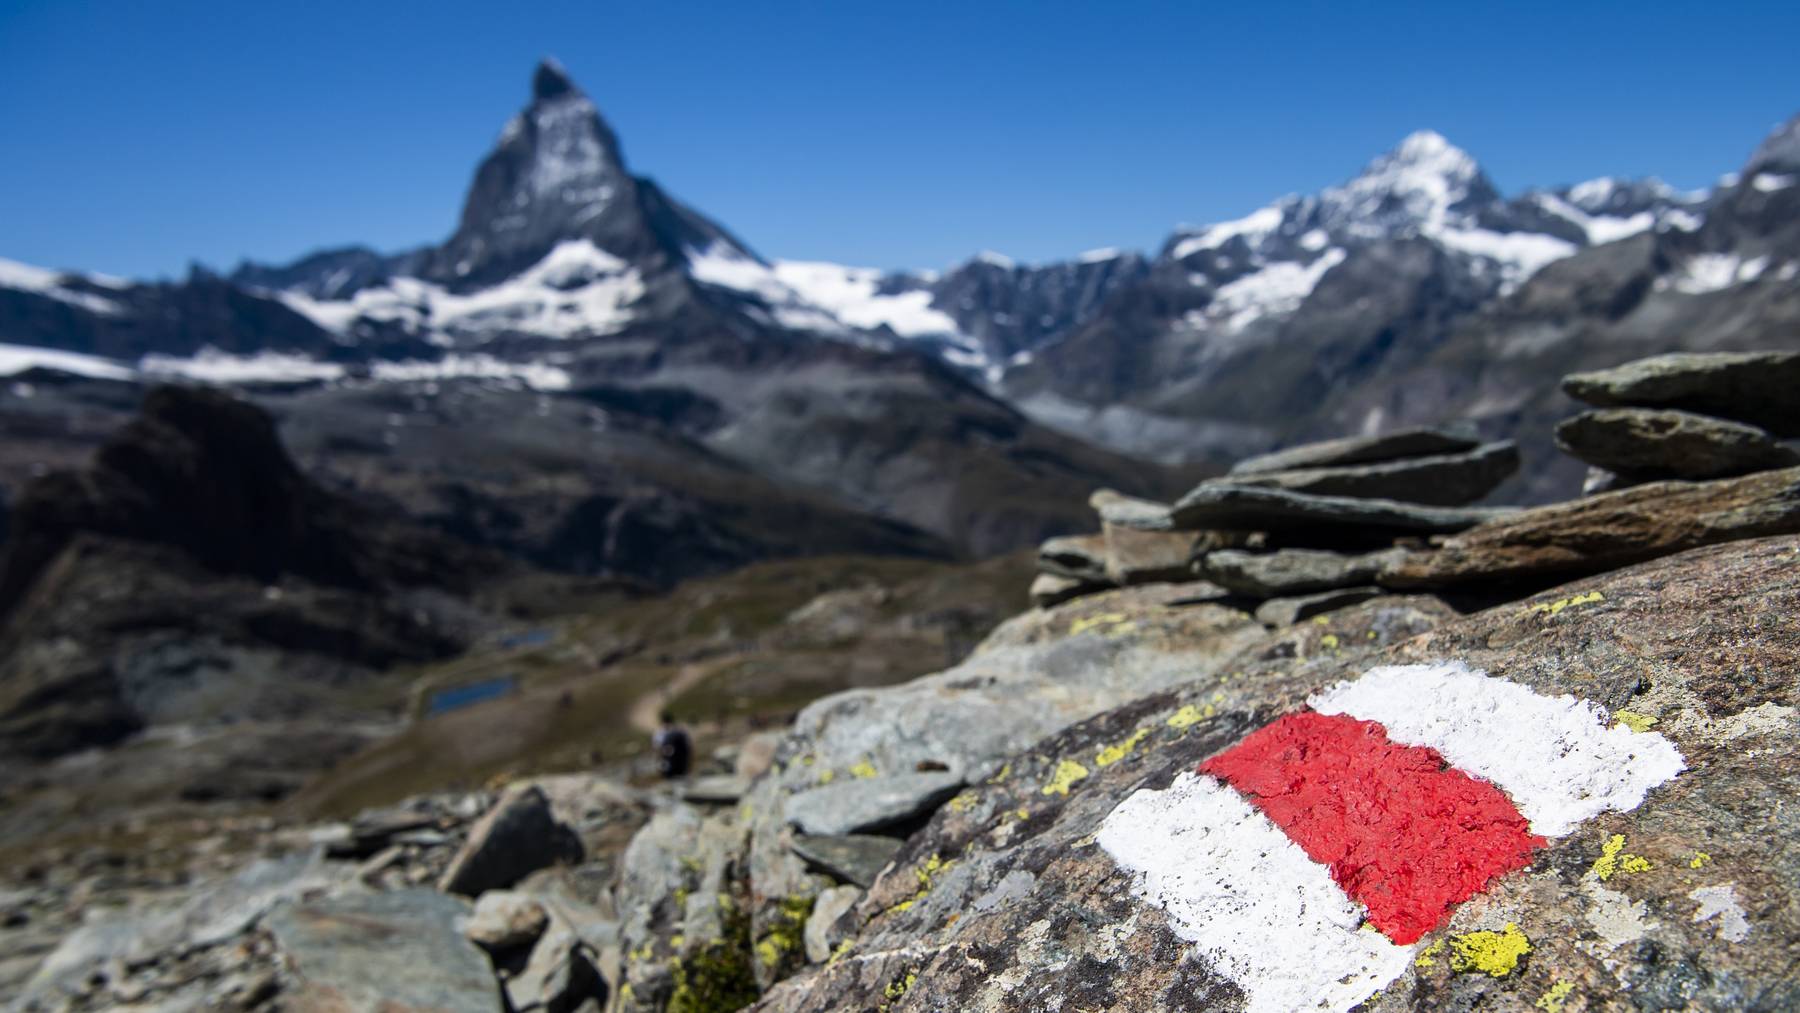 Am Matterhorn ist ein Pole beim Abstieg tödlich verunglückt. Er wurde erst vier Tage später von Rettungskräften gefunden. (Symbolbild)